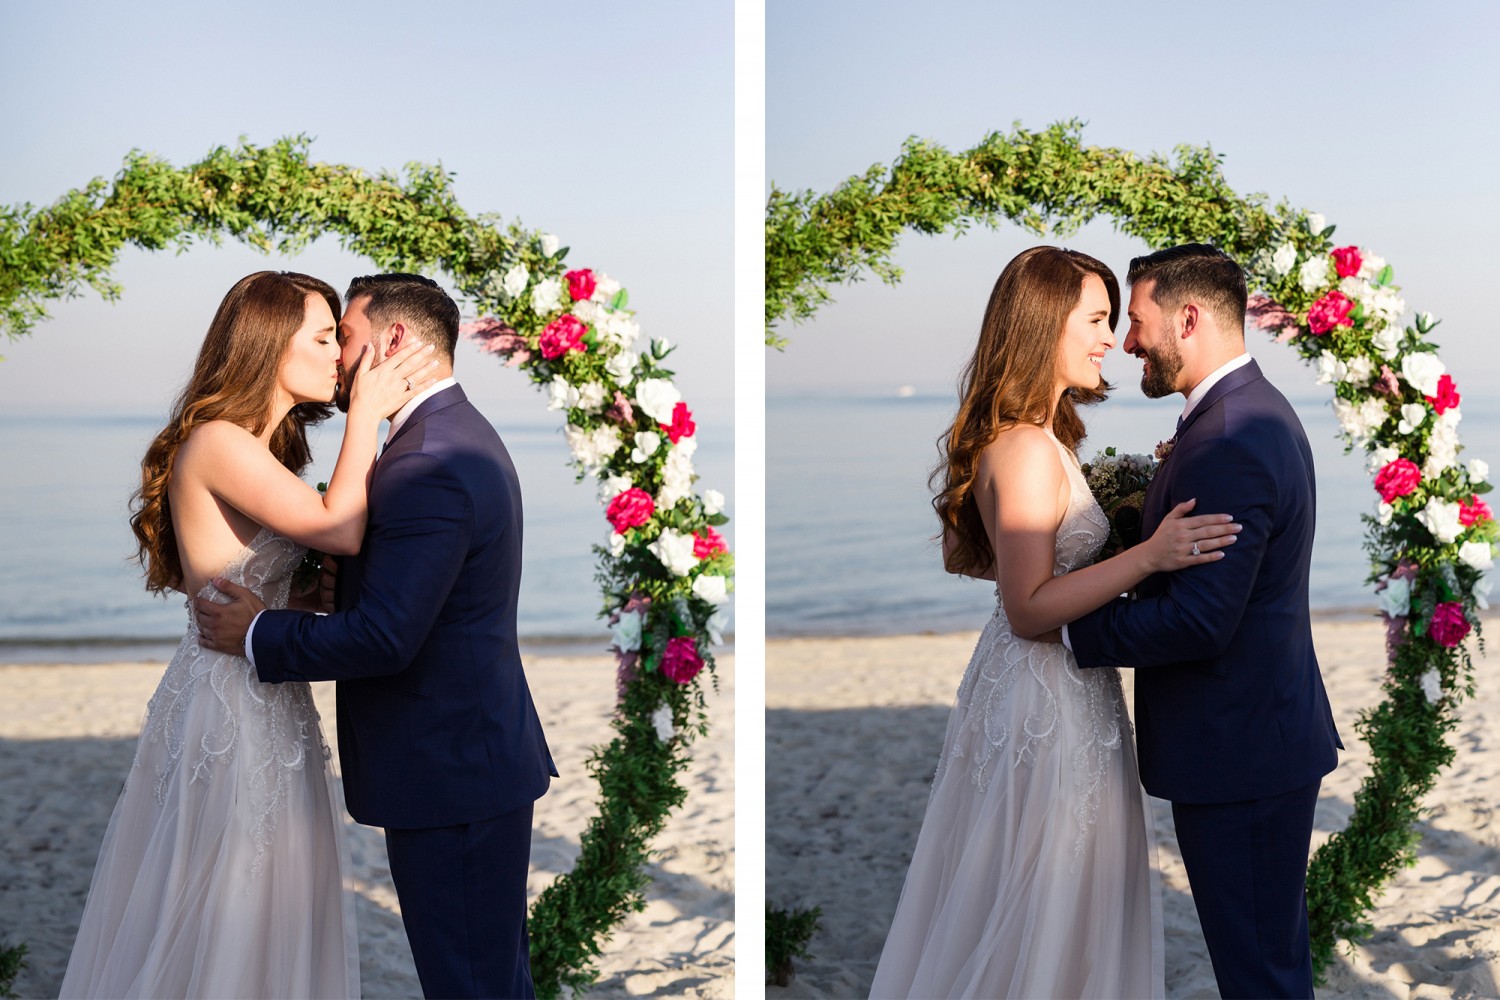 Φωτογράφος γάμου | Anka & Νίκος στην Παραλία Κατερίνης